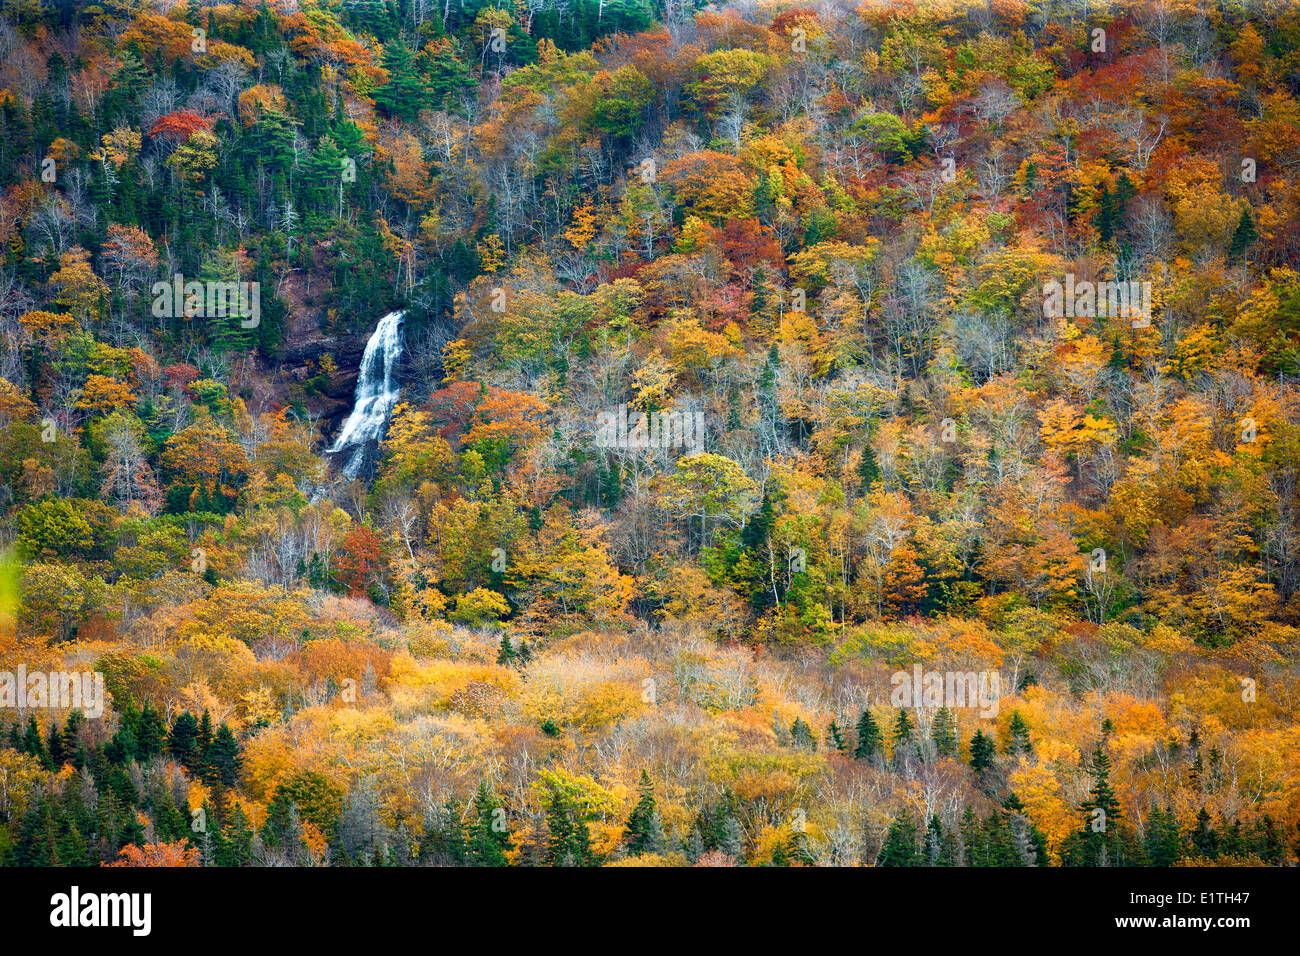 Avis de Beulach Ban Falls, Cape Breton Highlands National Park, Cape Breton, Nova Scotia, Canada Banque D'Images